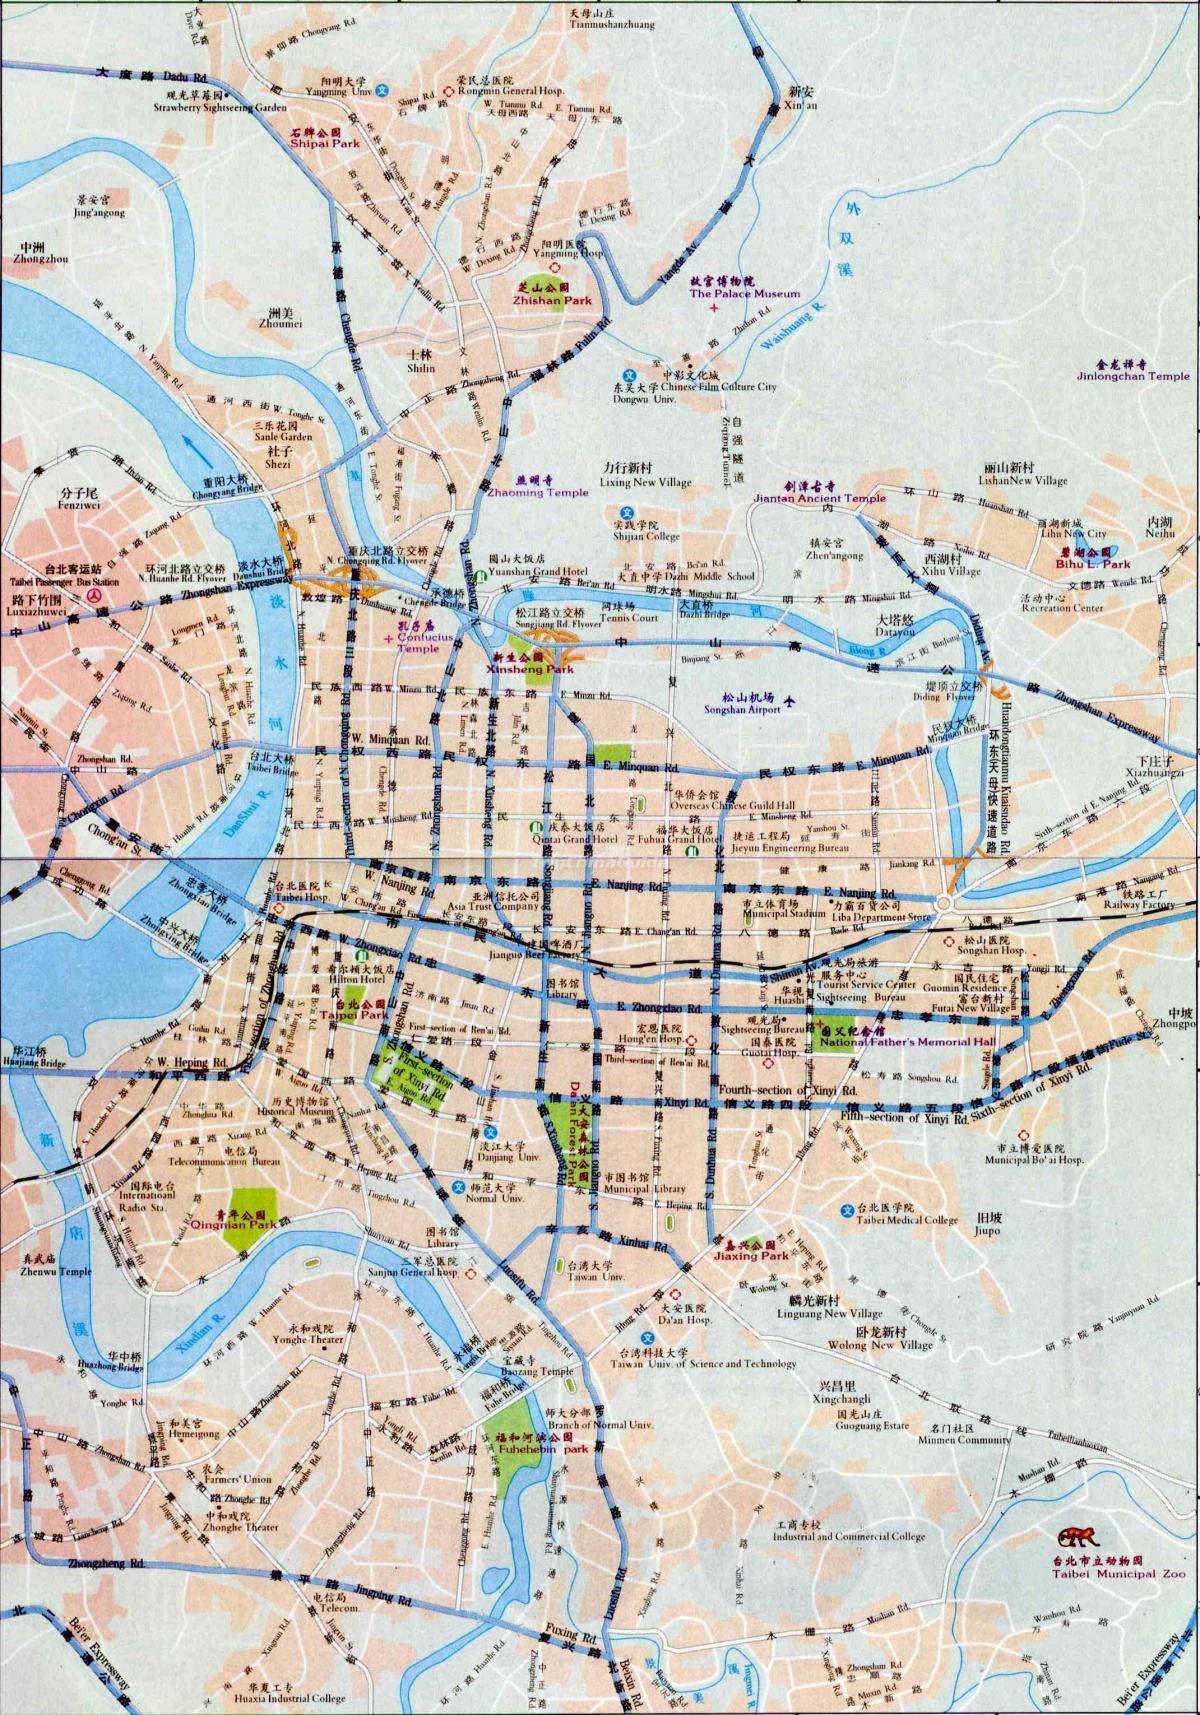 Plan des routes de Taipei